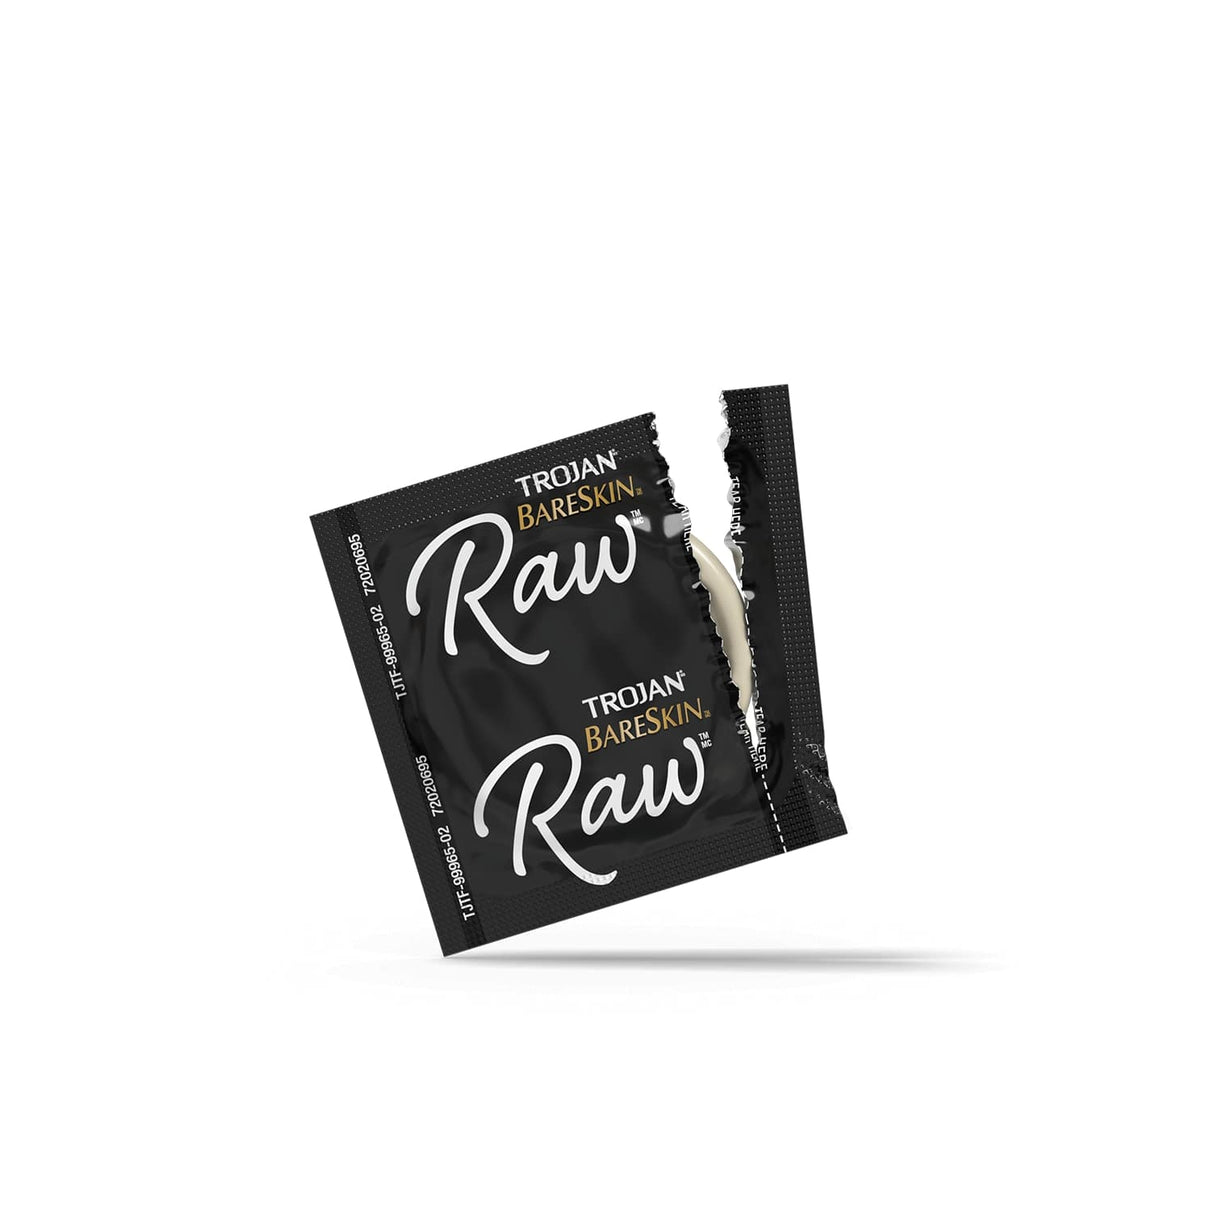 Trojan BareSkin Raw Condoms - Pack Of 24